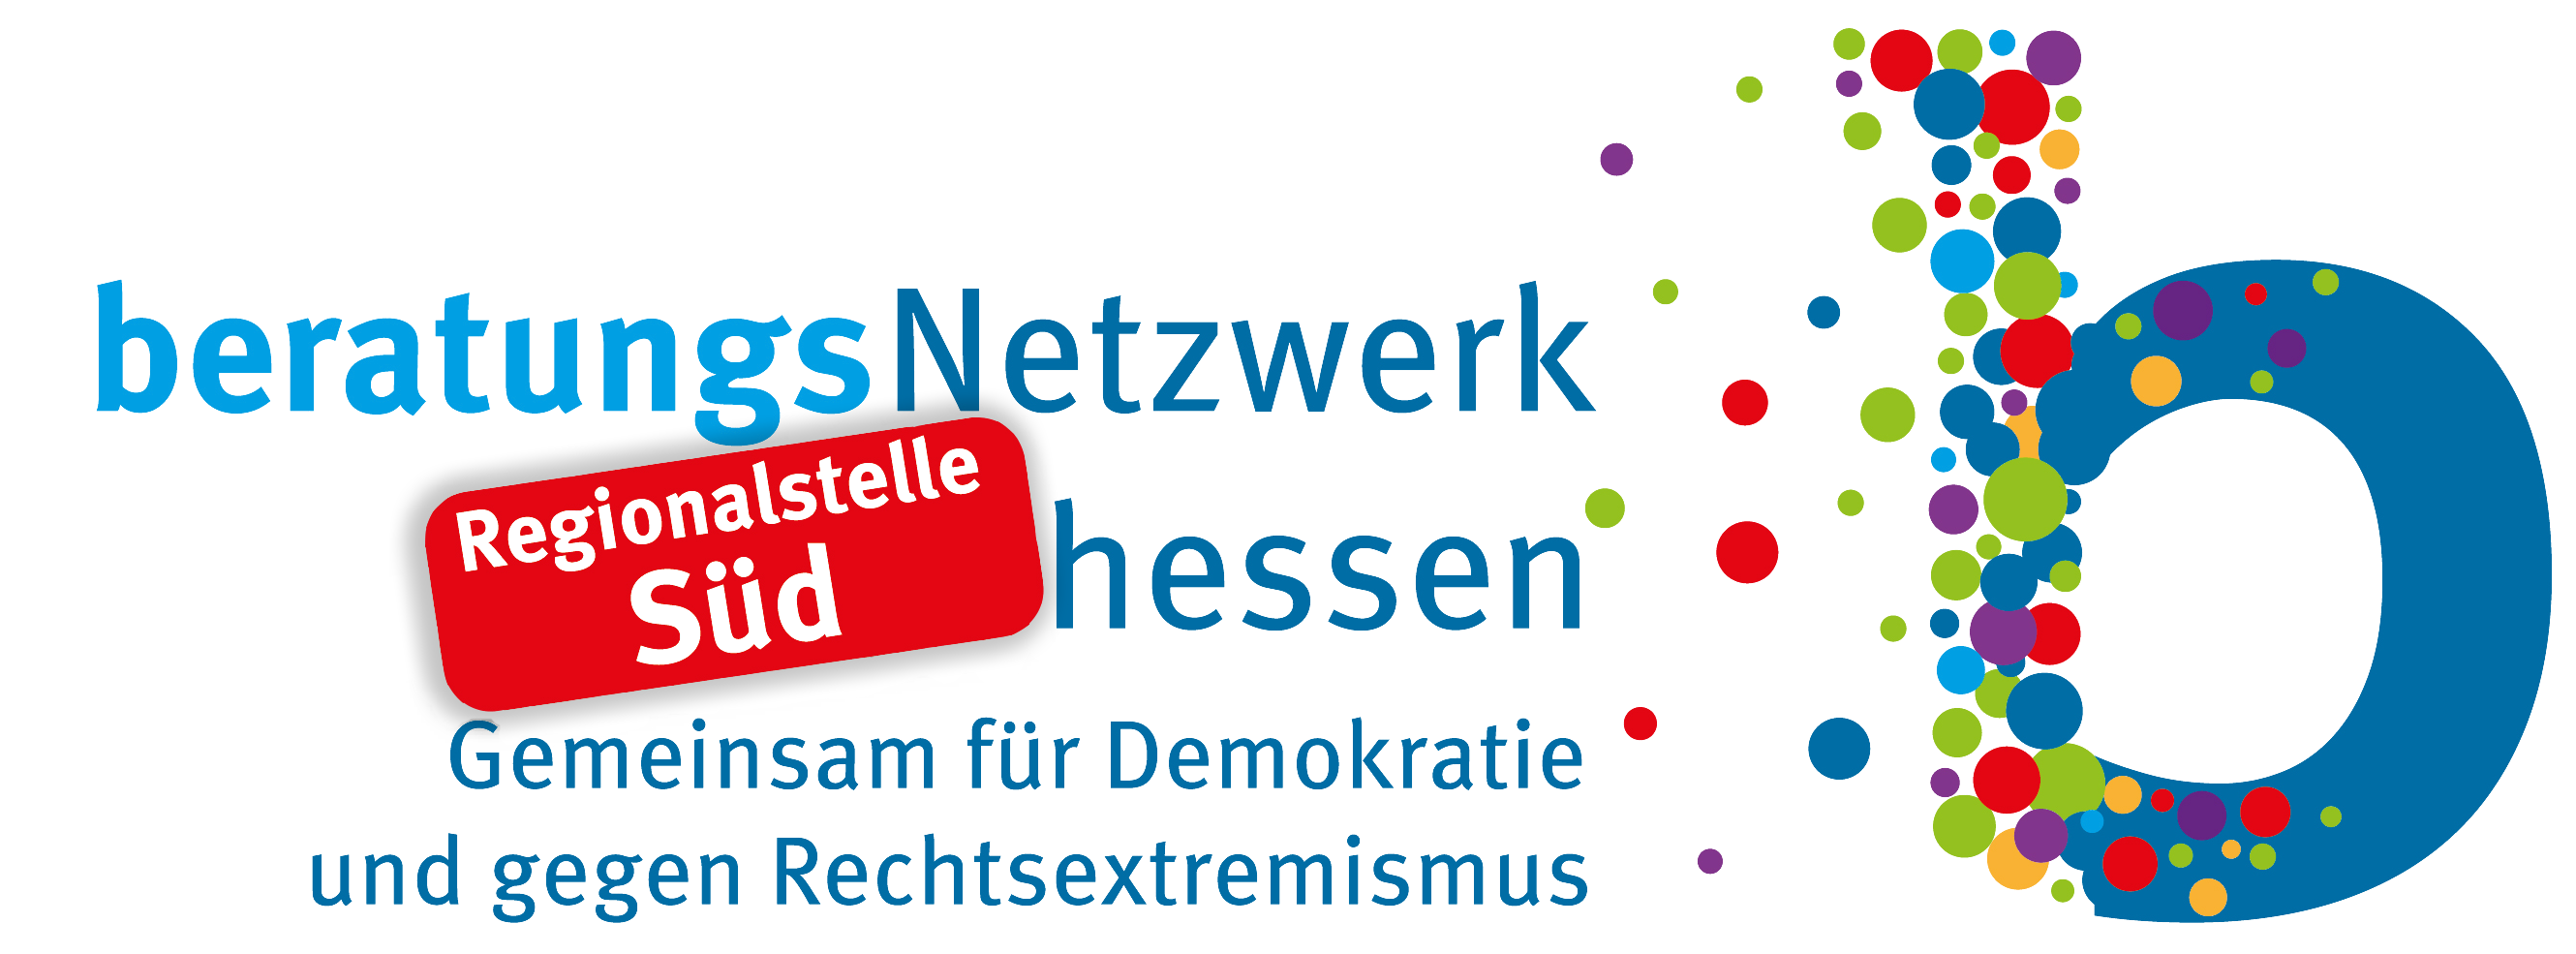 Regionalstelle Süd des Beratungsnetzwerk Hessen  – Gemeinsam für Demokratie und gegen Rechtsextremismus